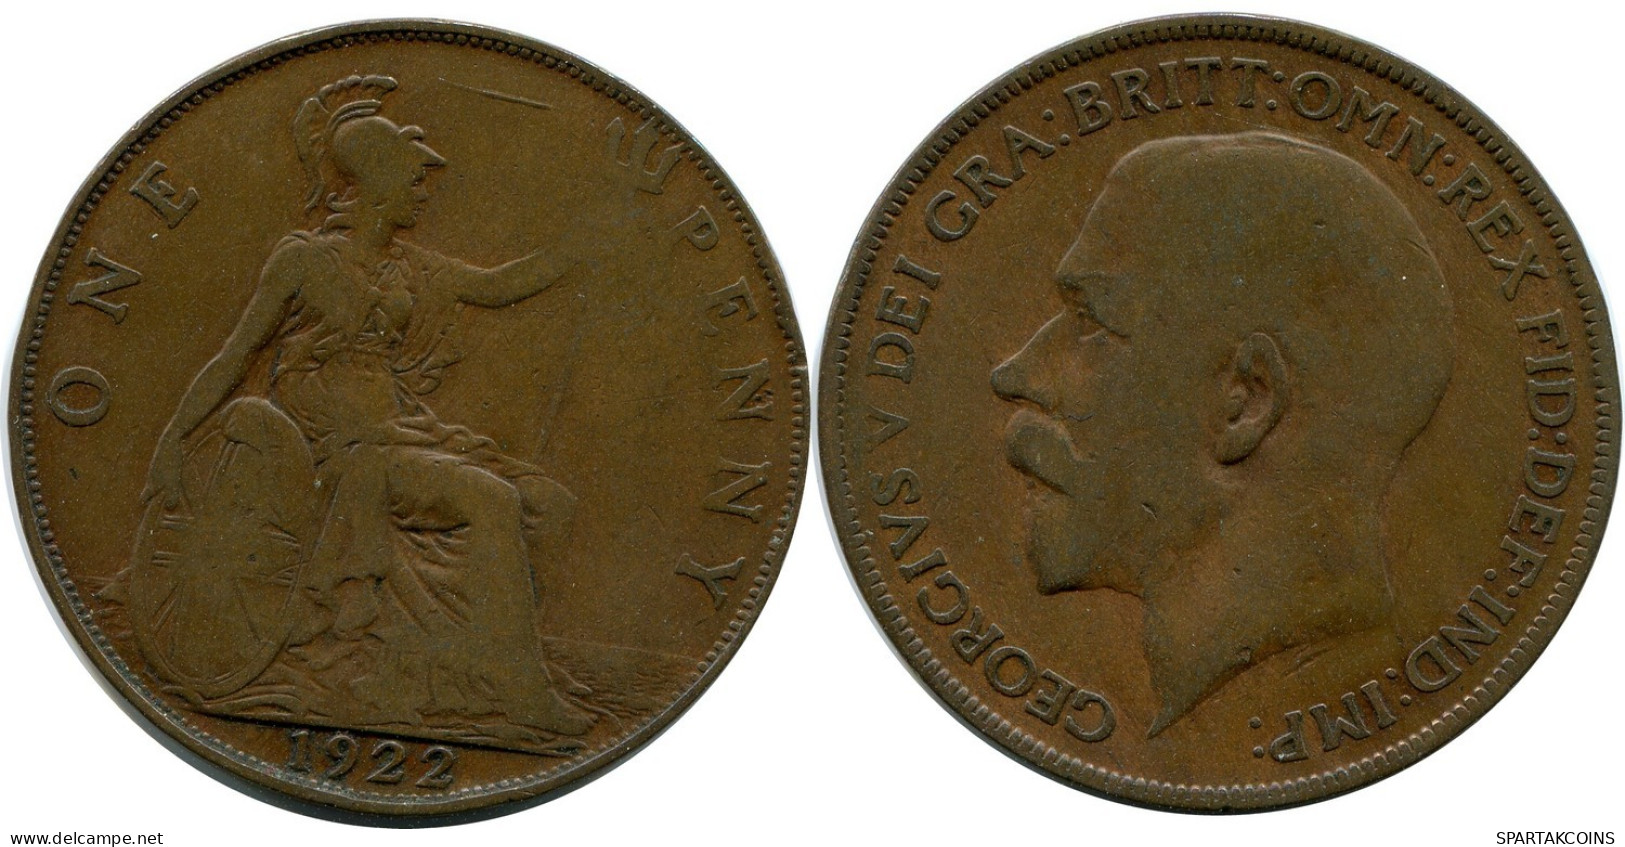 PENNY 1922 UK GROßBRITANNIEN GREAT BRITAIN Münze #BB014.D.A - D. 1 Penny